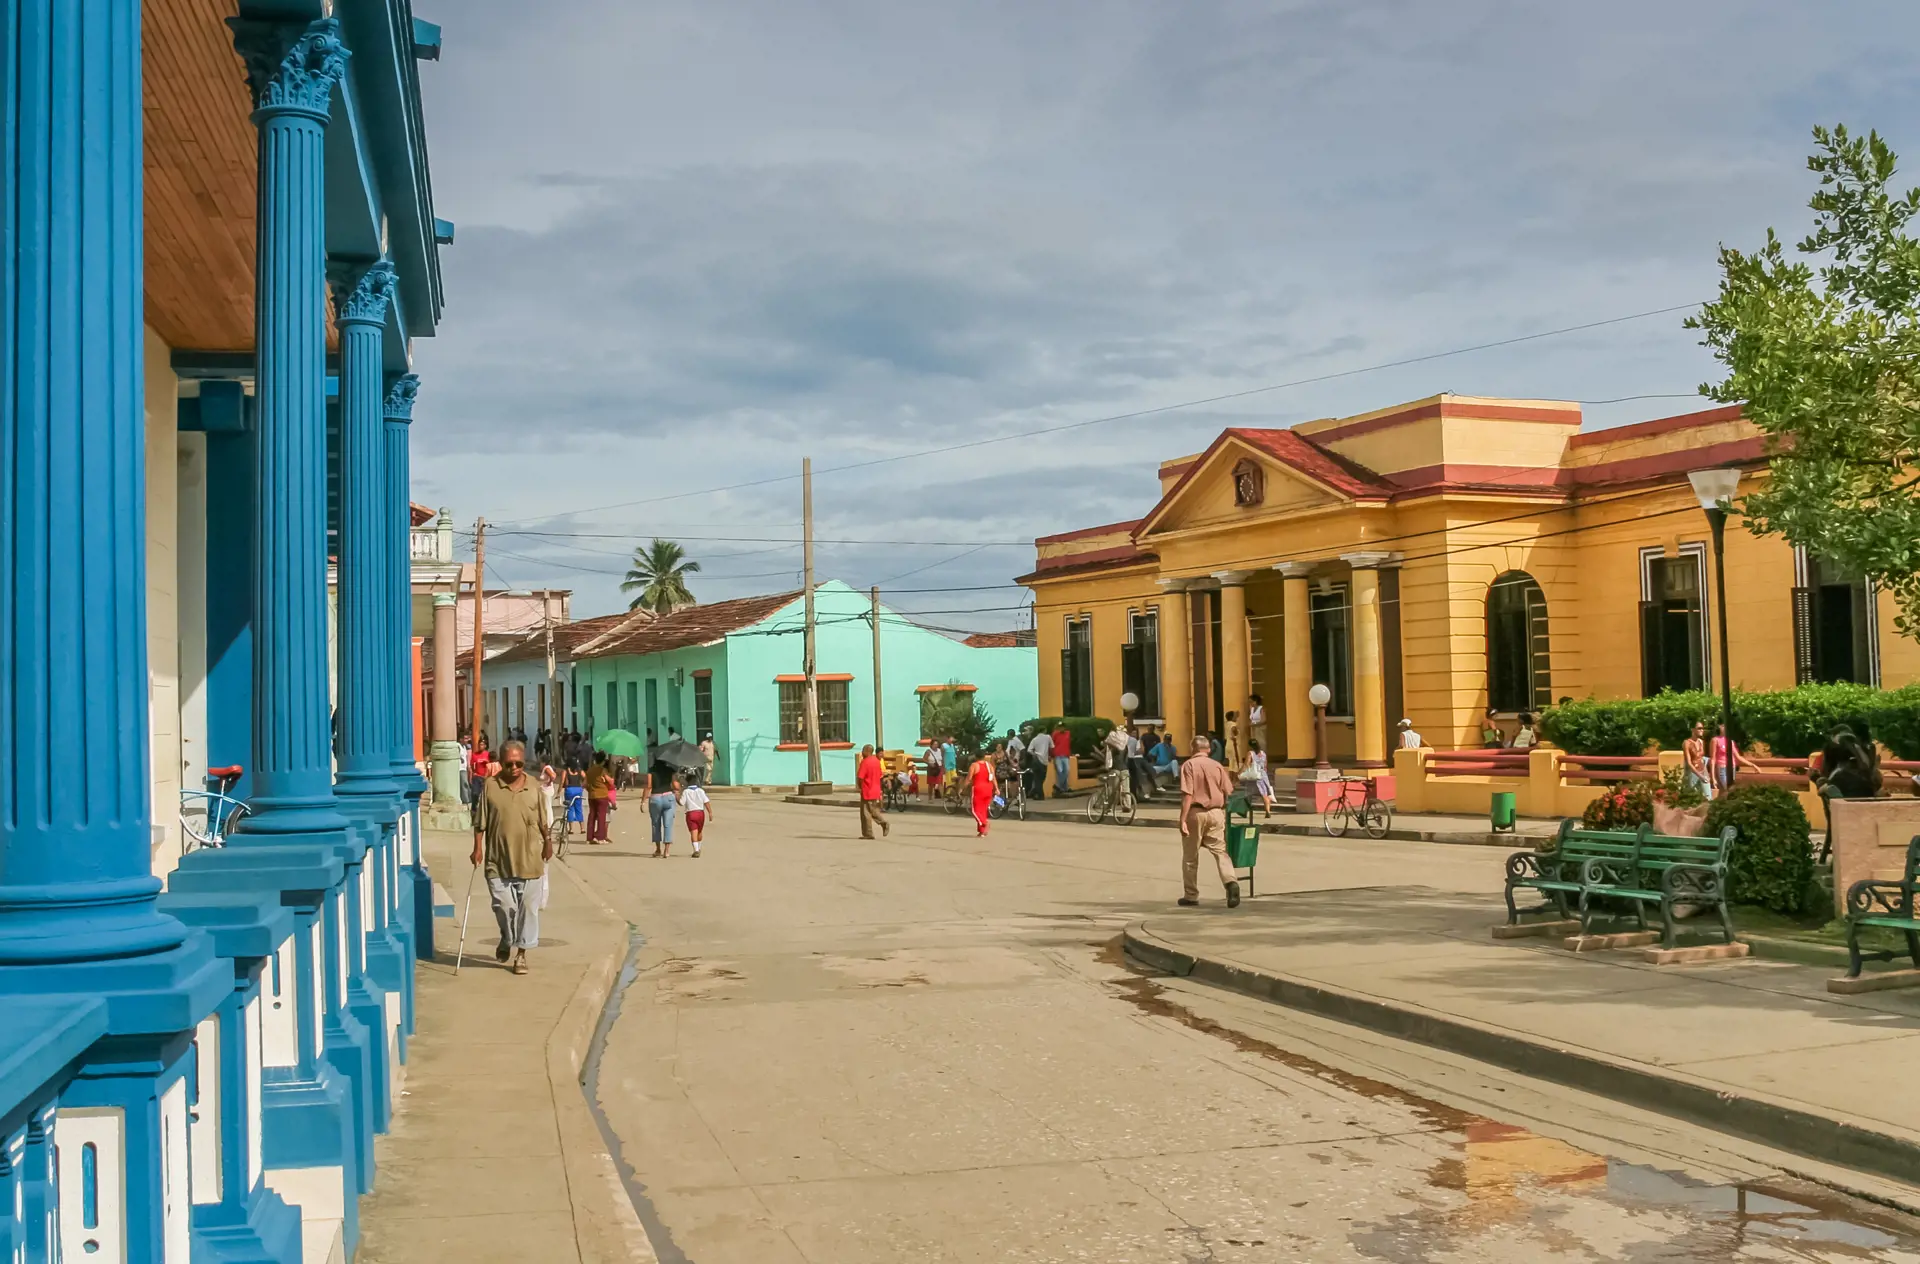 TIDSLOMME - Nyd at gå rundt i de gamle byer mellem smukke bygninger og spændende mennesker. Her i Baracoa.